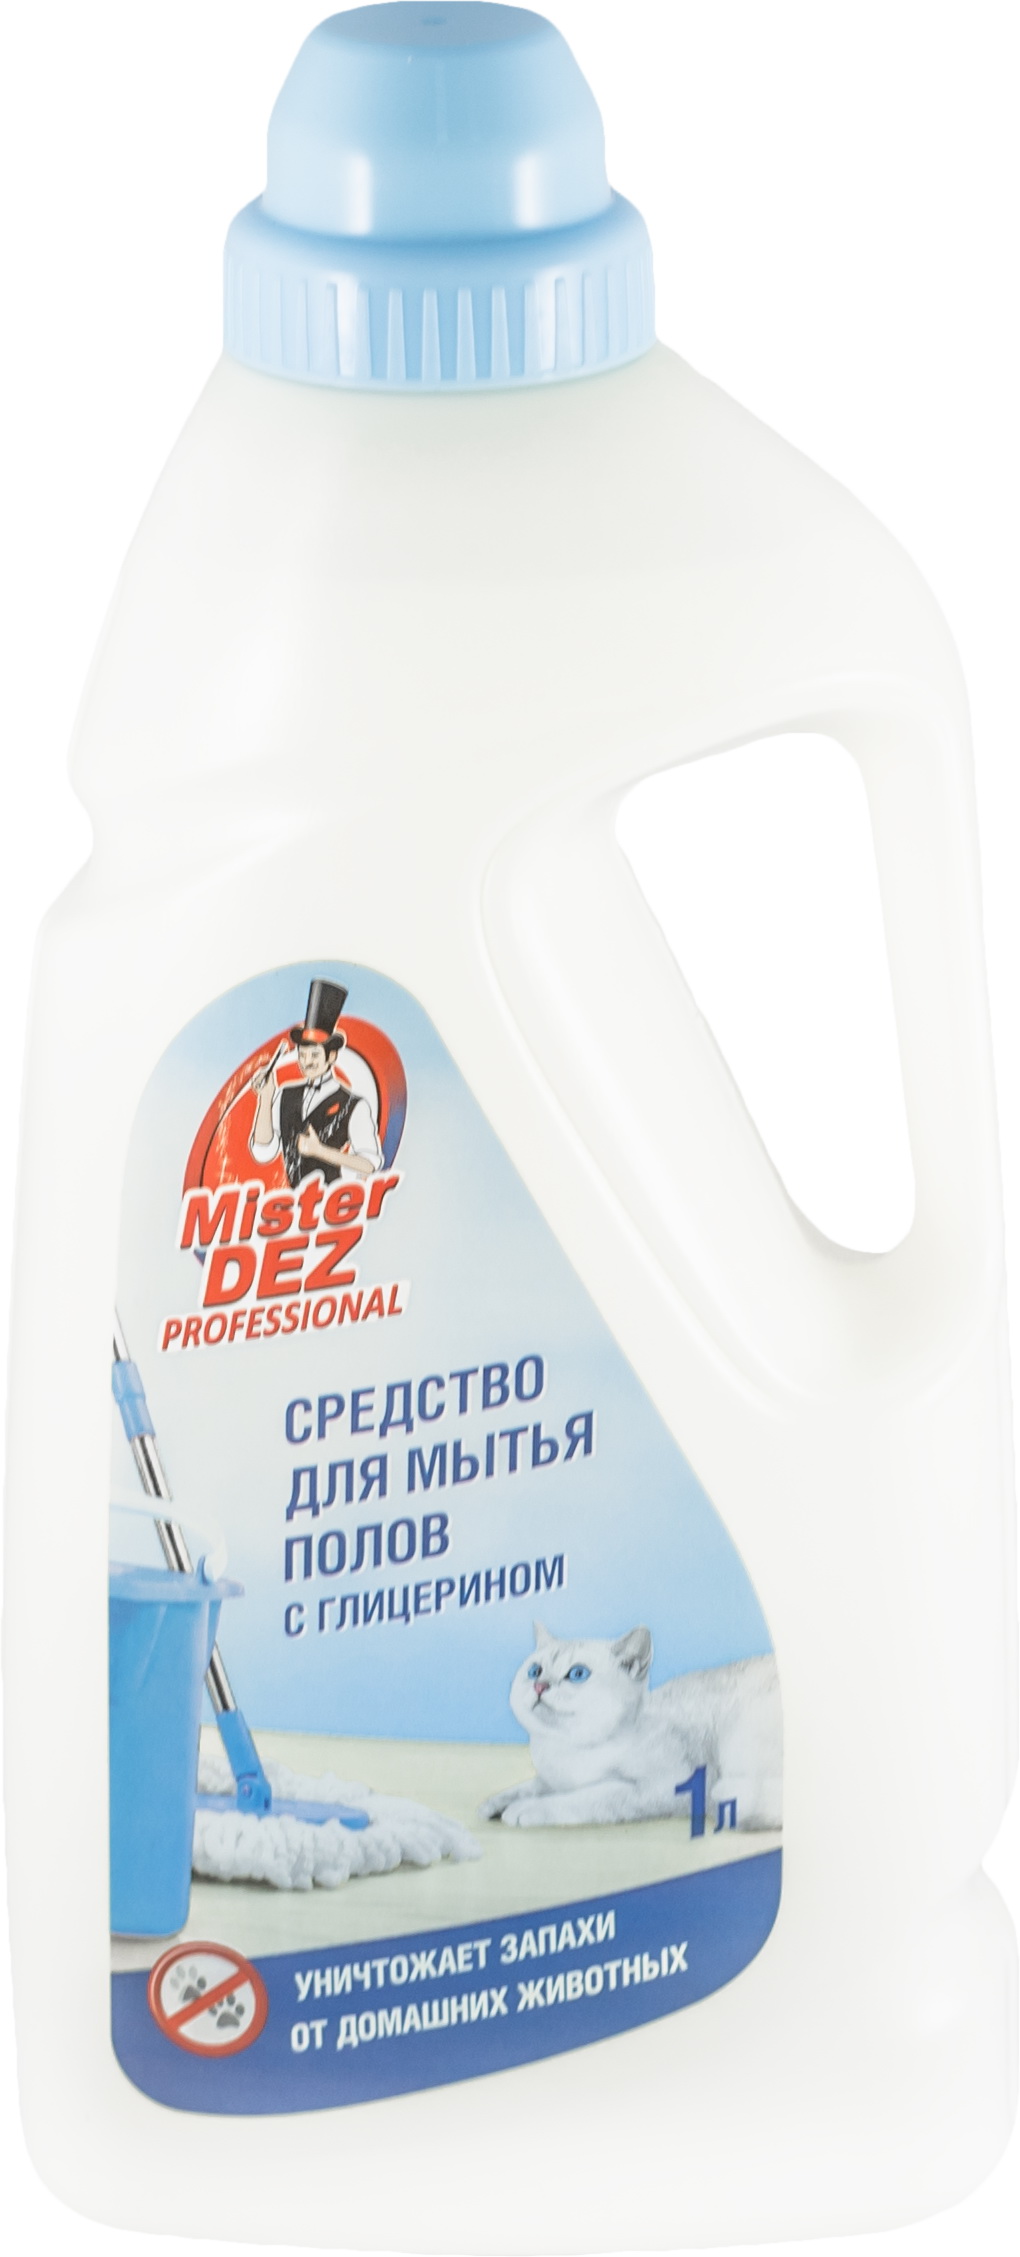 Средство д/мытья пола MISTER DEZ Professional с глицерином 85423/992 1,0л. (уничтожает запахи дом. ж